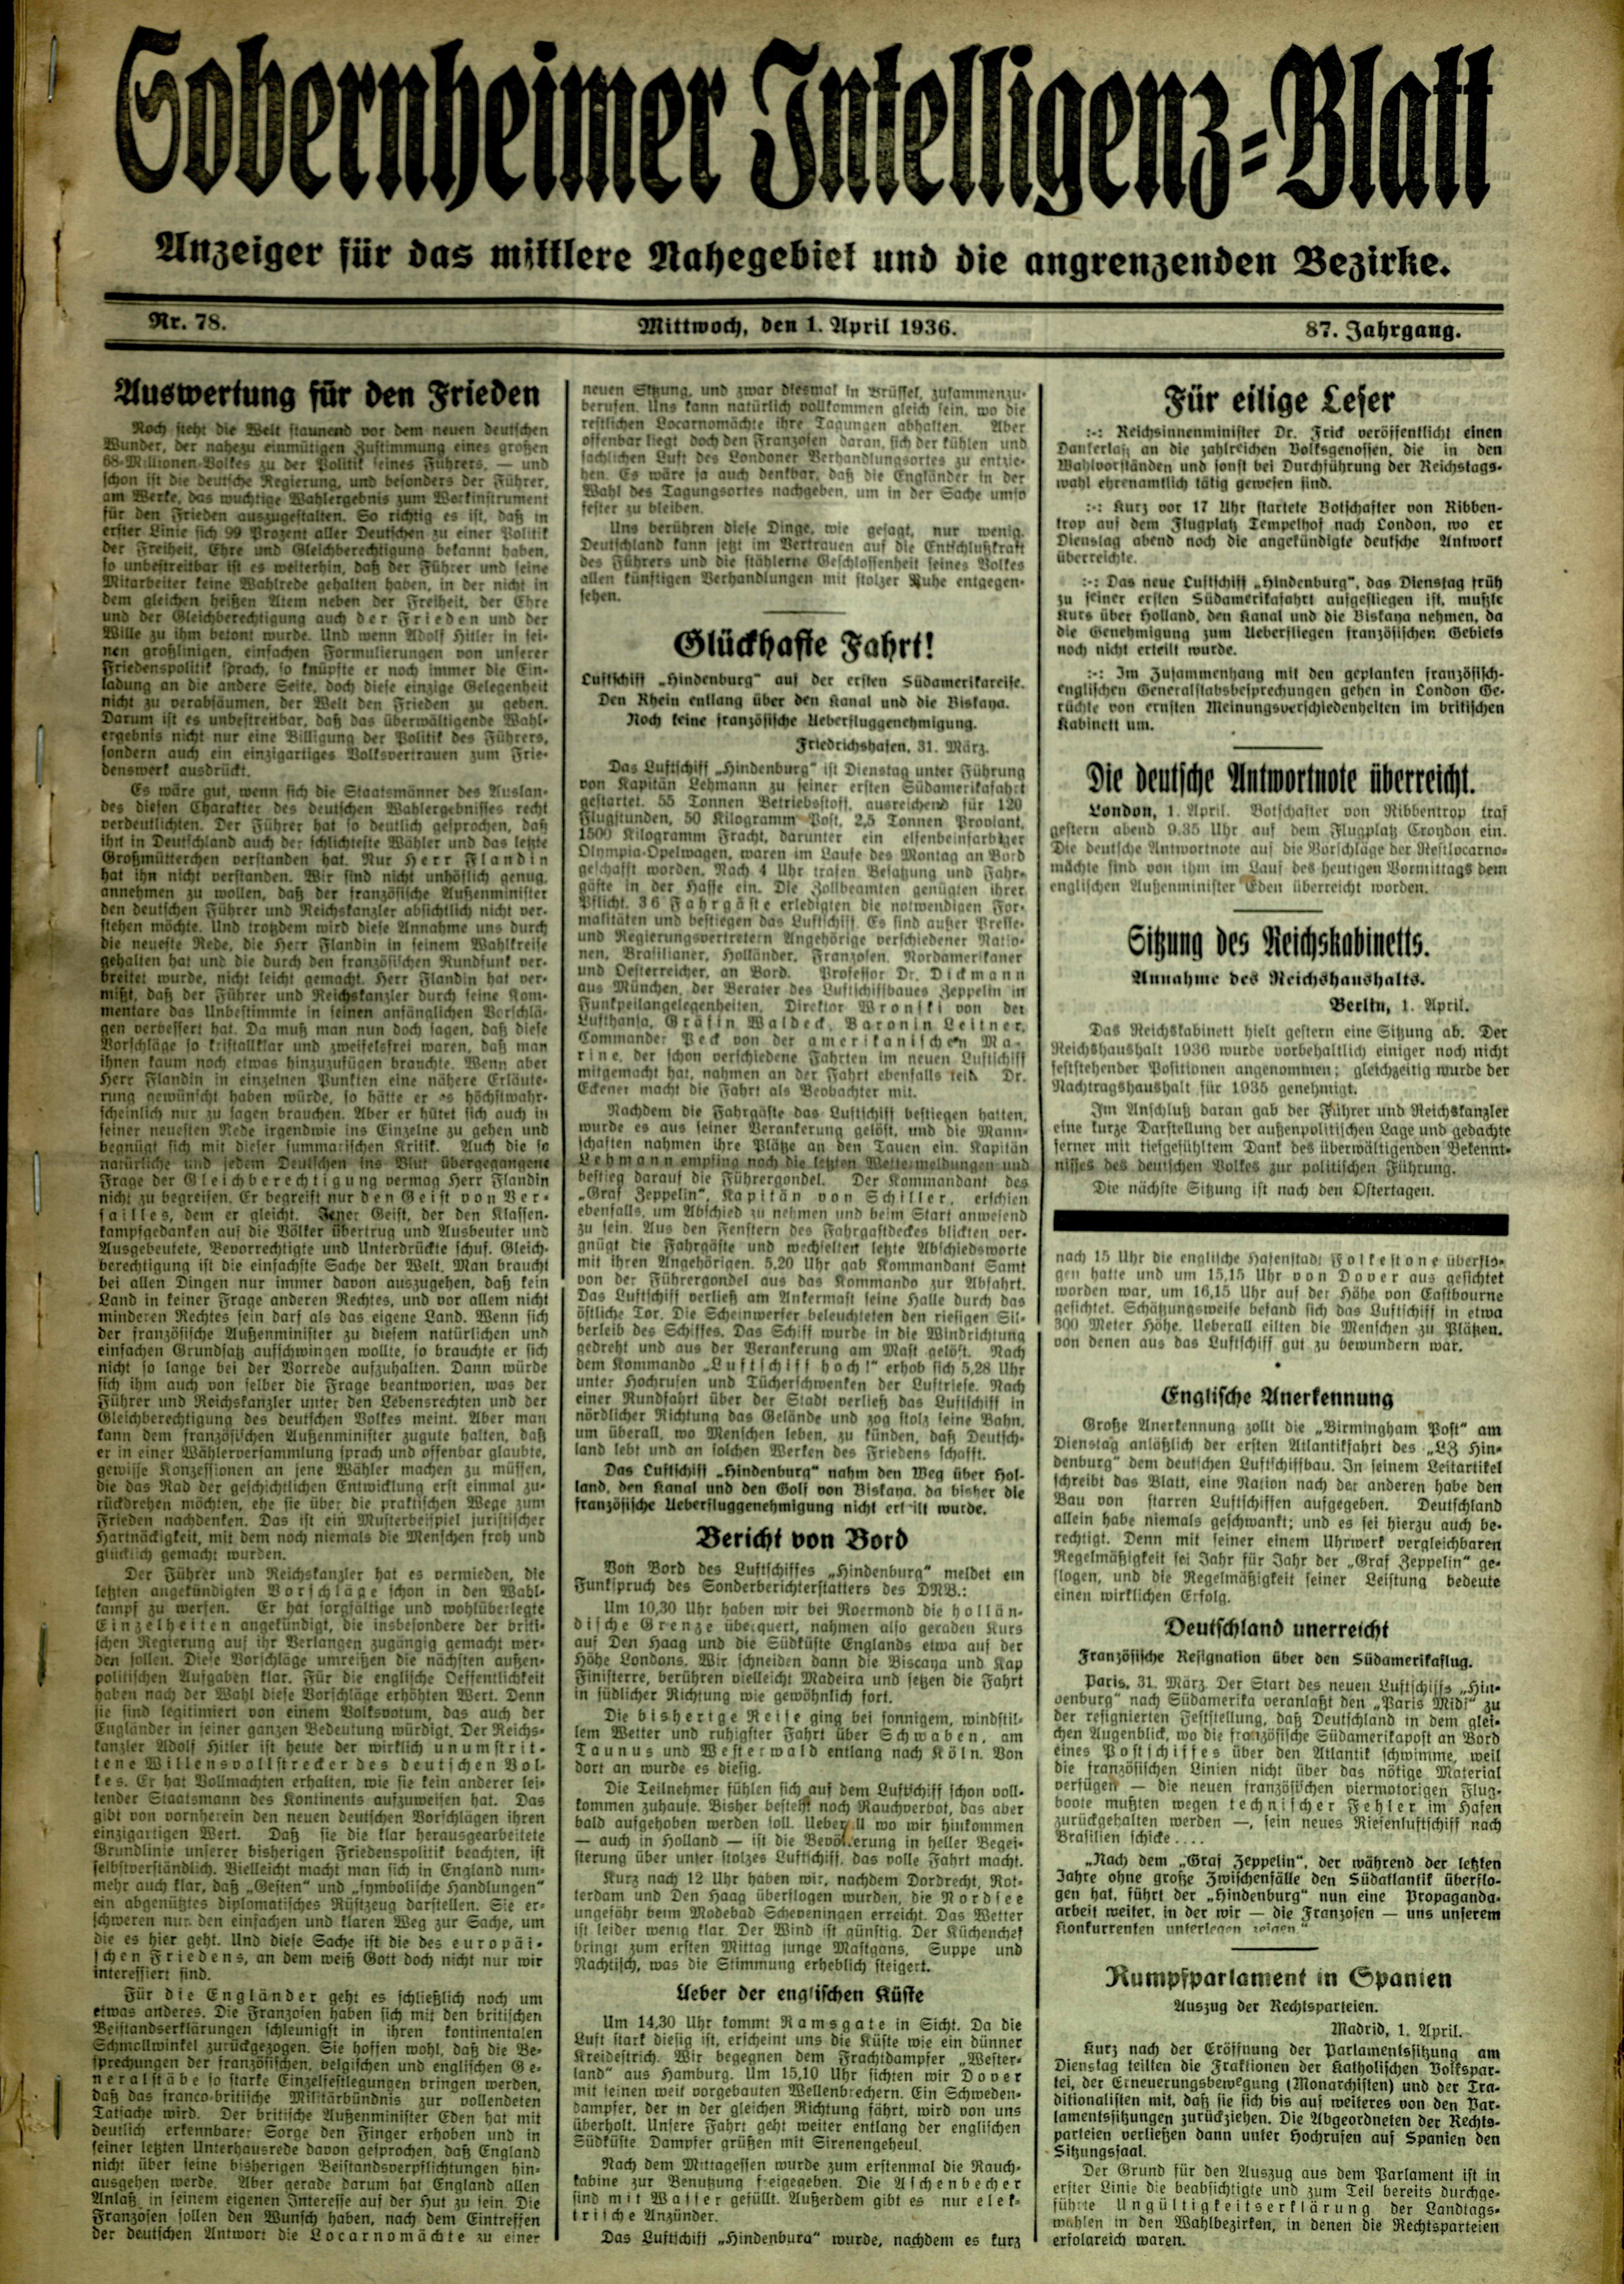 Zeitung: Sobernheimer Intelligenzblatt; April 1936 , Jg. 87, Nr. 78 (Heimatmuseum Bad Sobernheim CC BY-NC-SA)